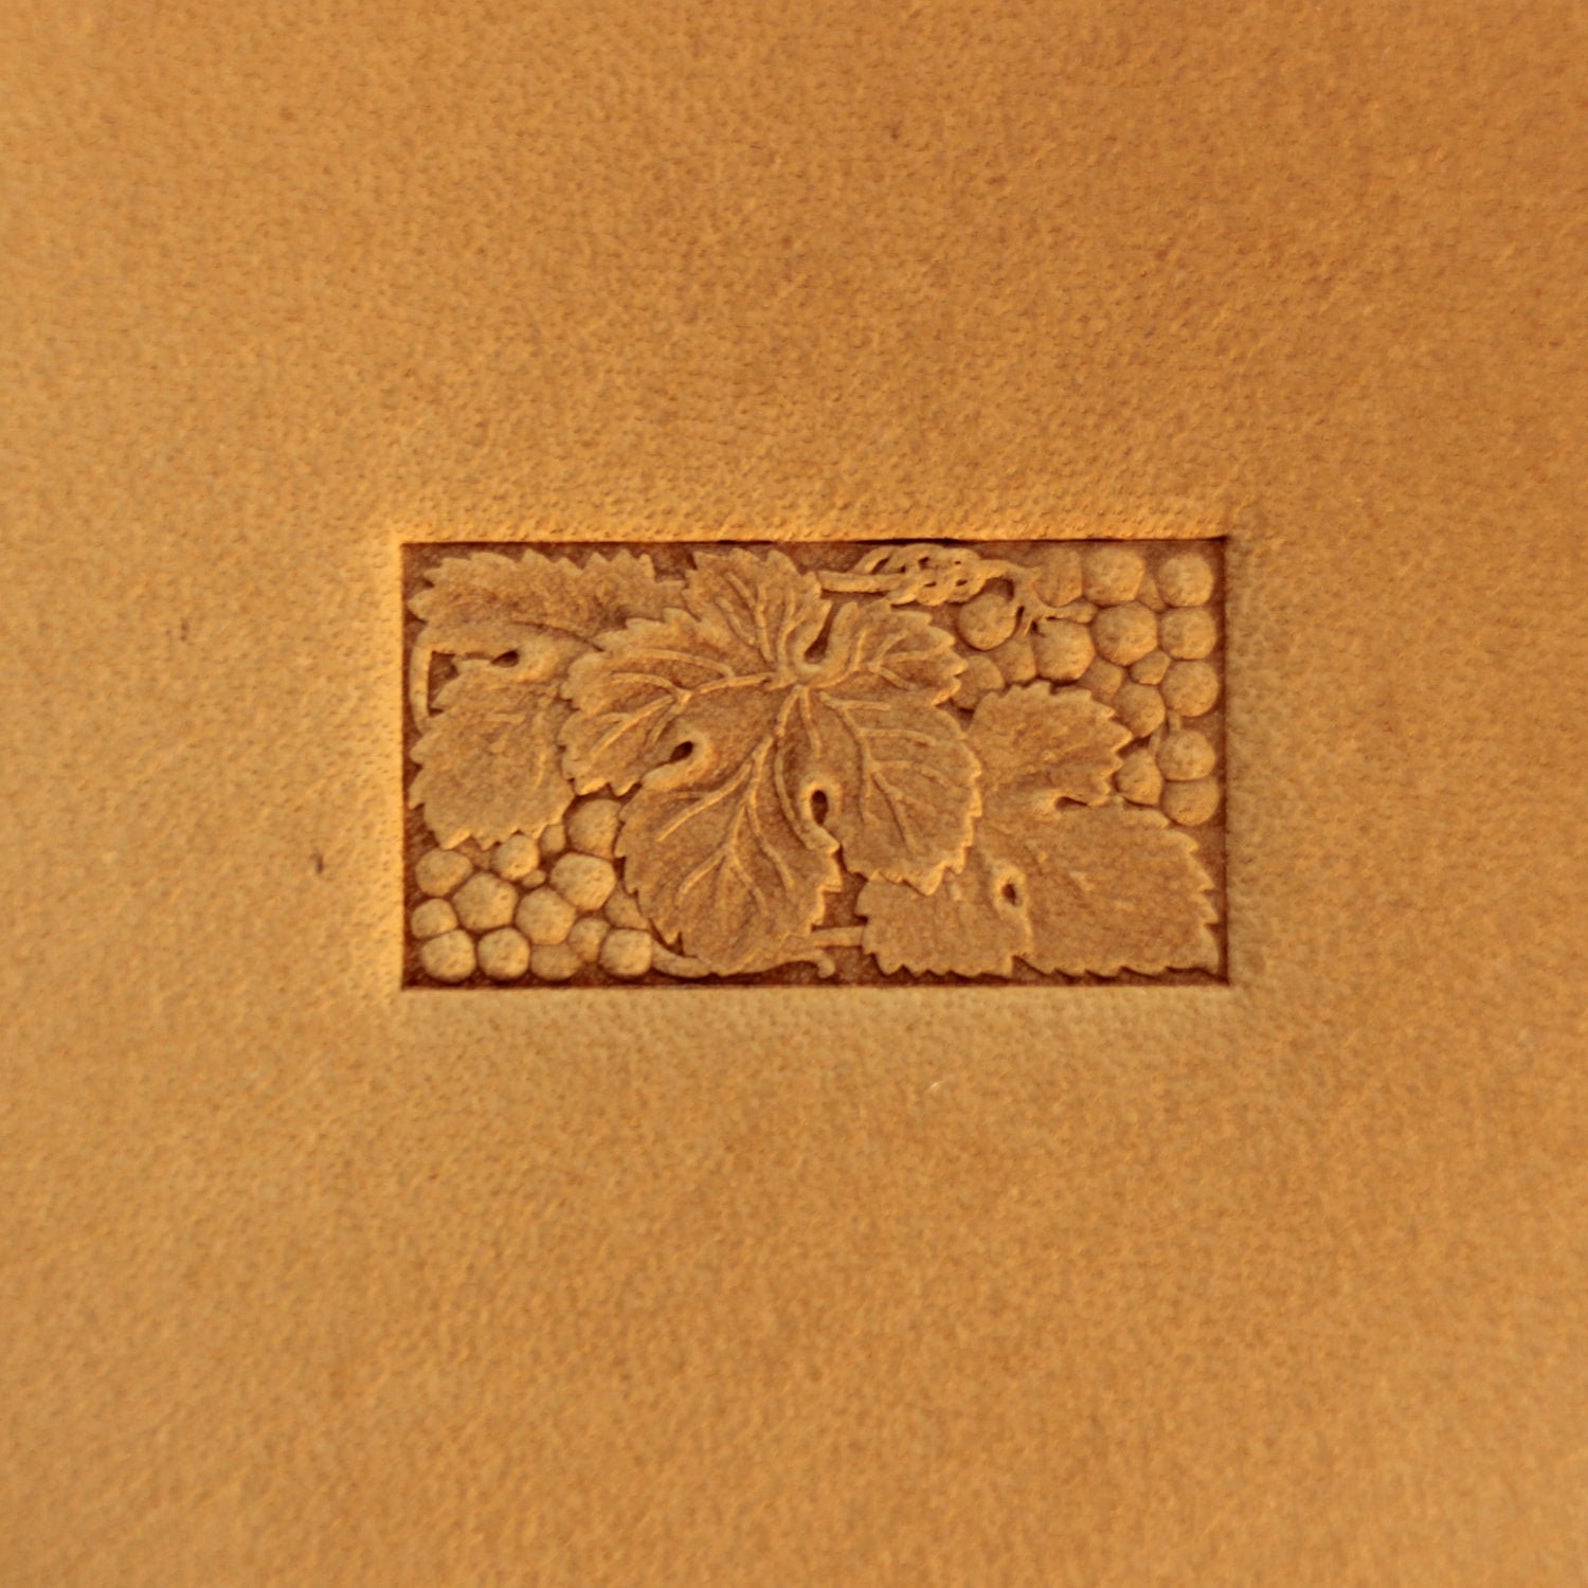 Leather stamp tool #244 - SpasGoranov